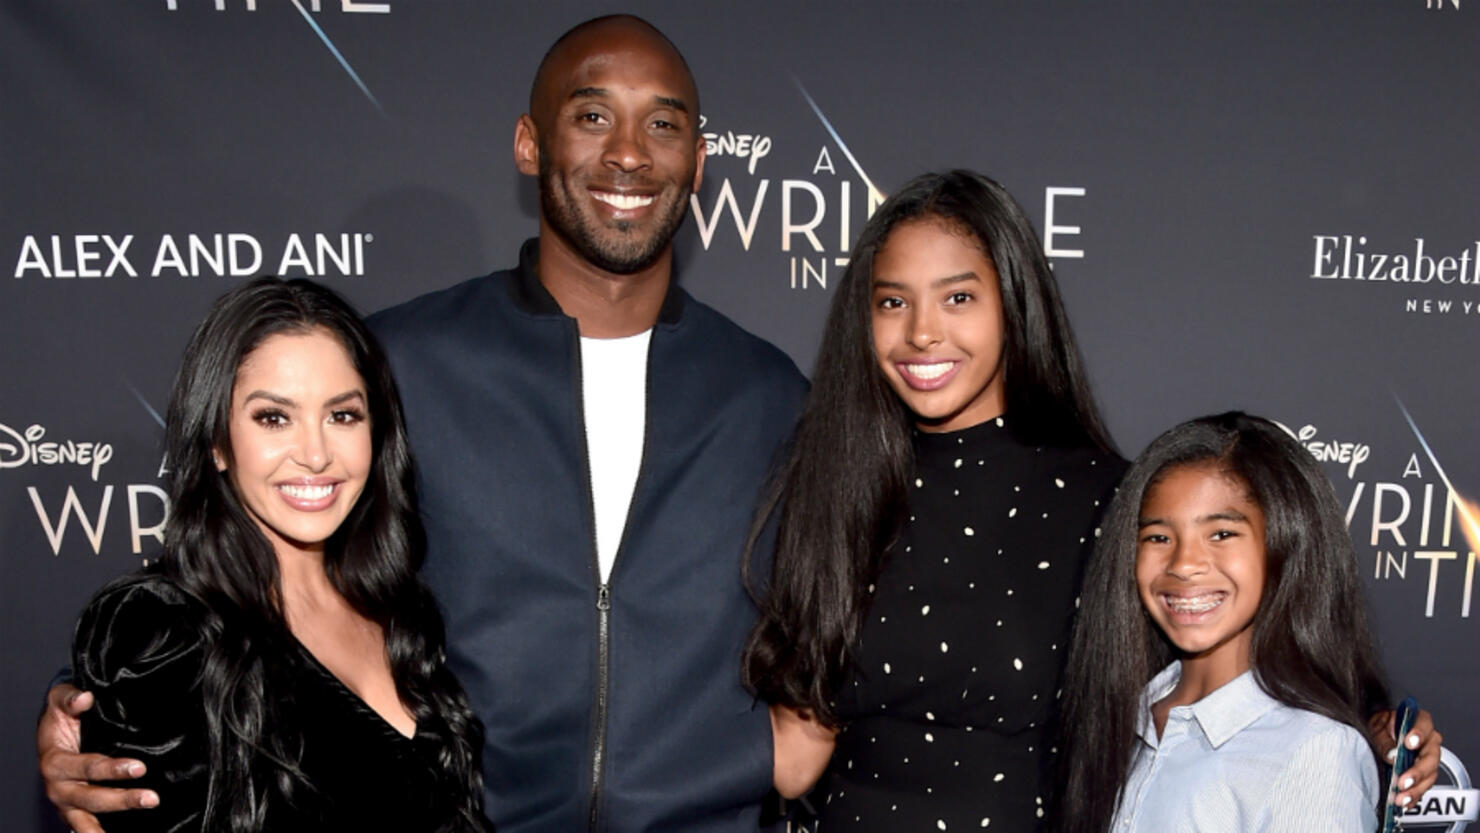 The sadness of Kobe and Gigi Bryant's unfinished impact on women's